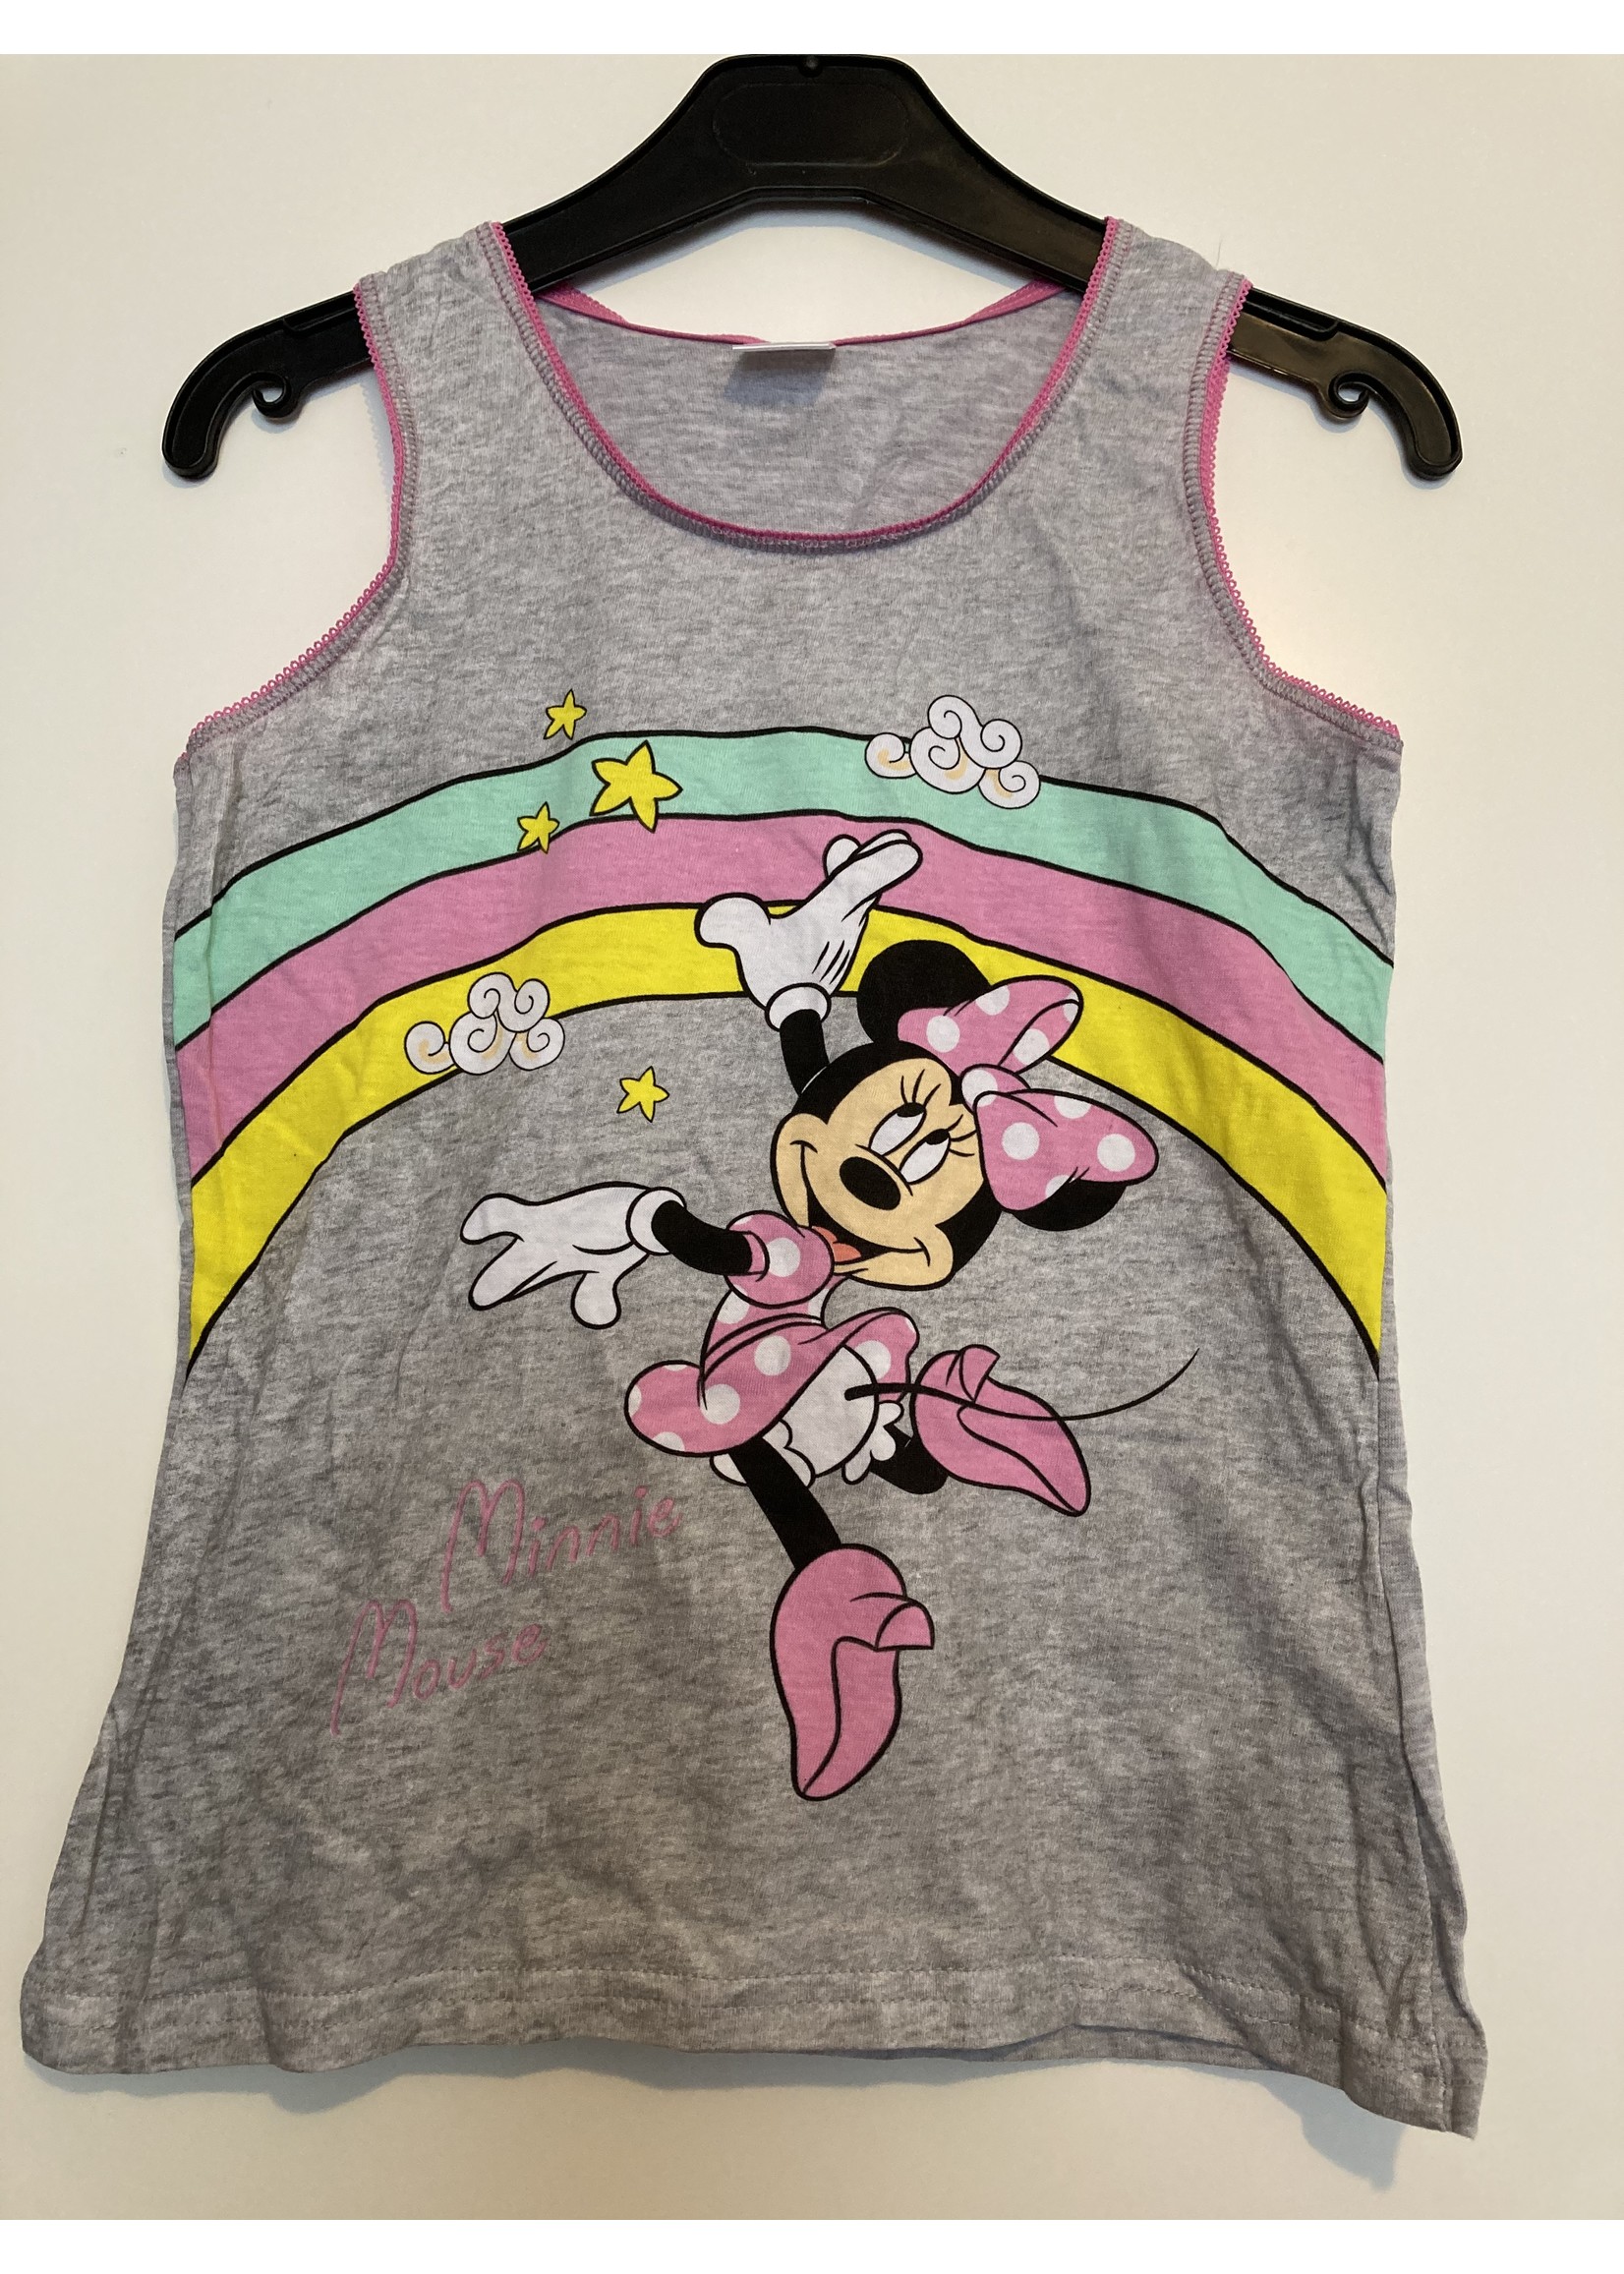 Disney Minnie Mouse underwear from Disney pink